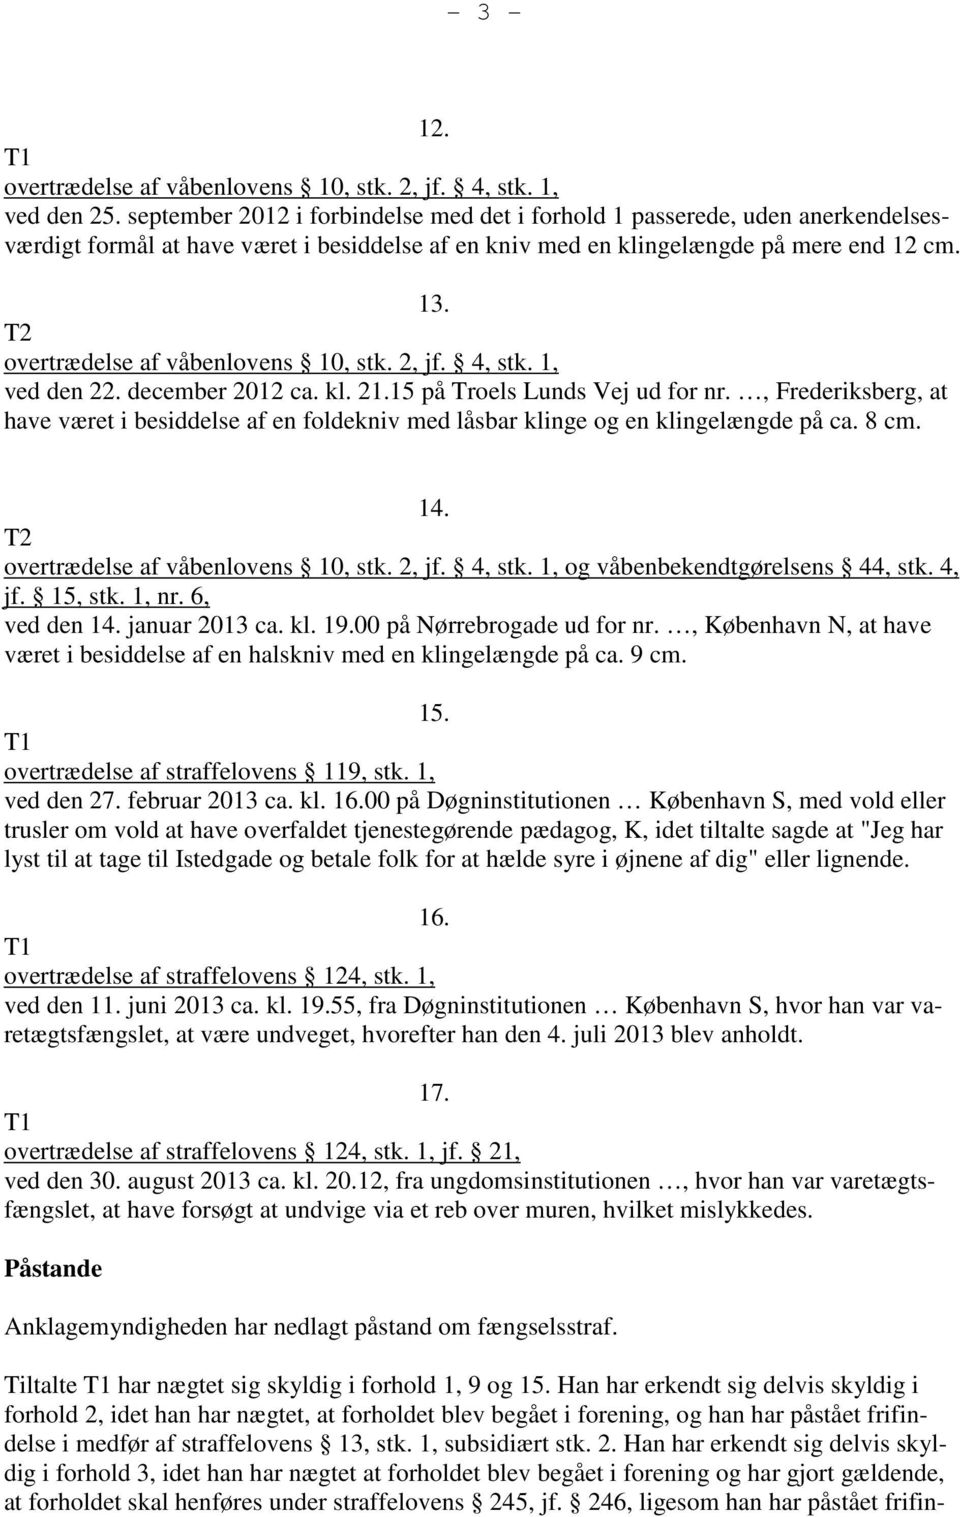 T2 overtrædelse af våbenlovens 10, stk. 2, jf. 4, stk. 1, ved den 22. december 2012 ca. kl. 21.15 på Troels Lunds Vej ud for nr.